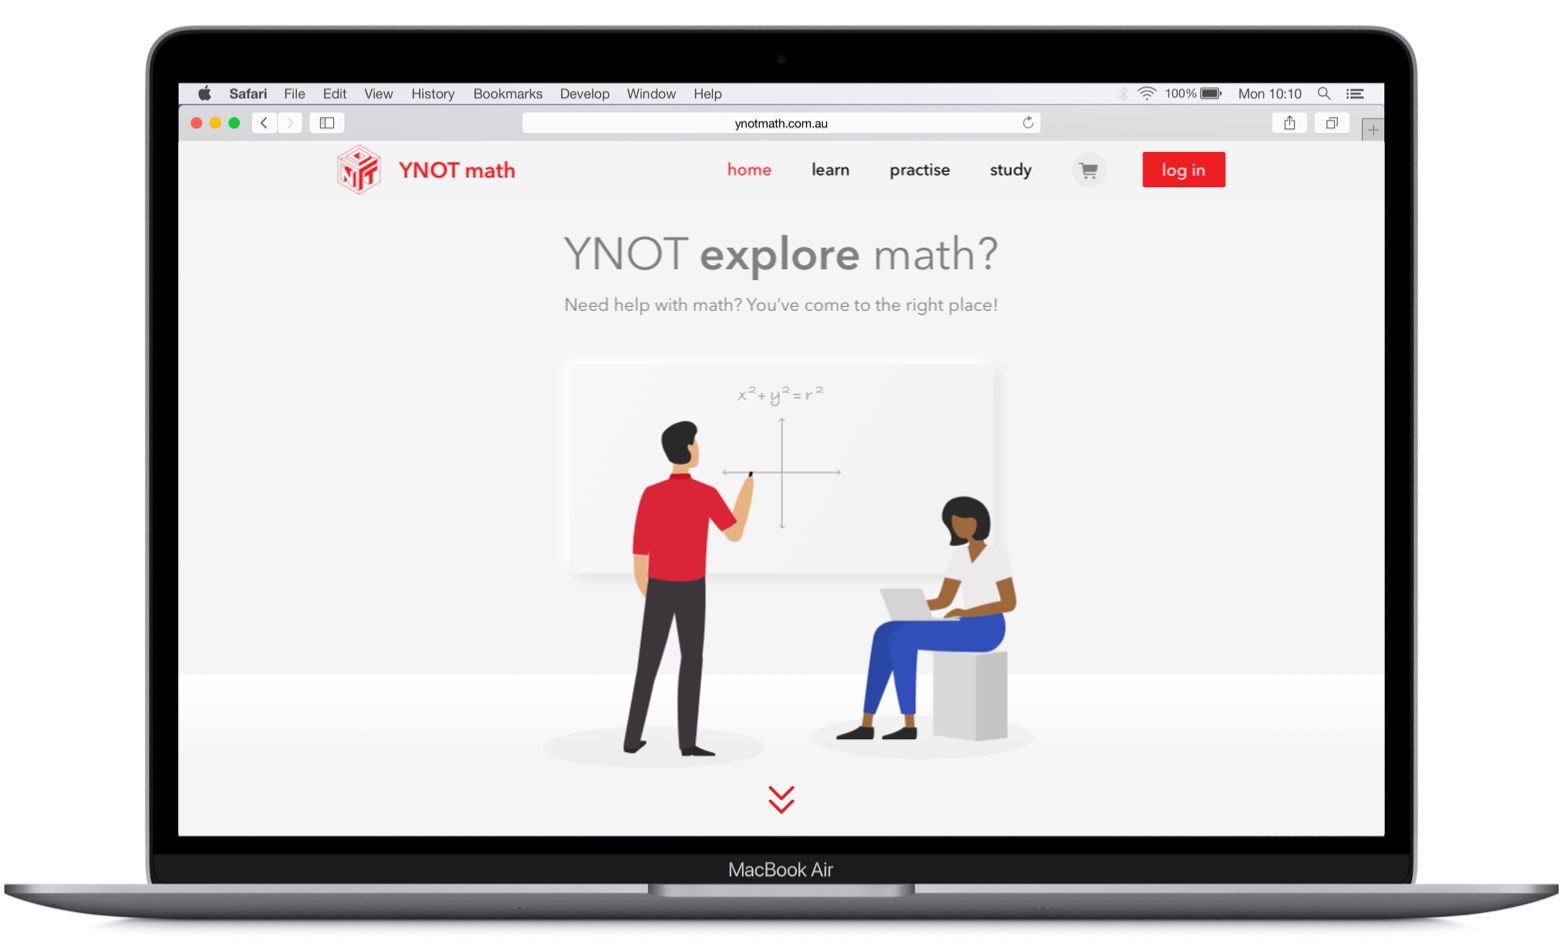 The YNOT math website running on a laptop